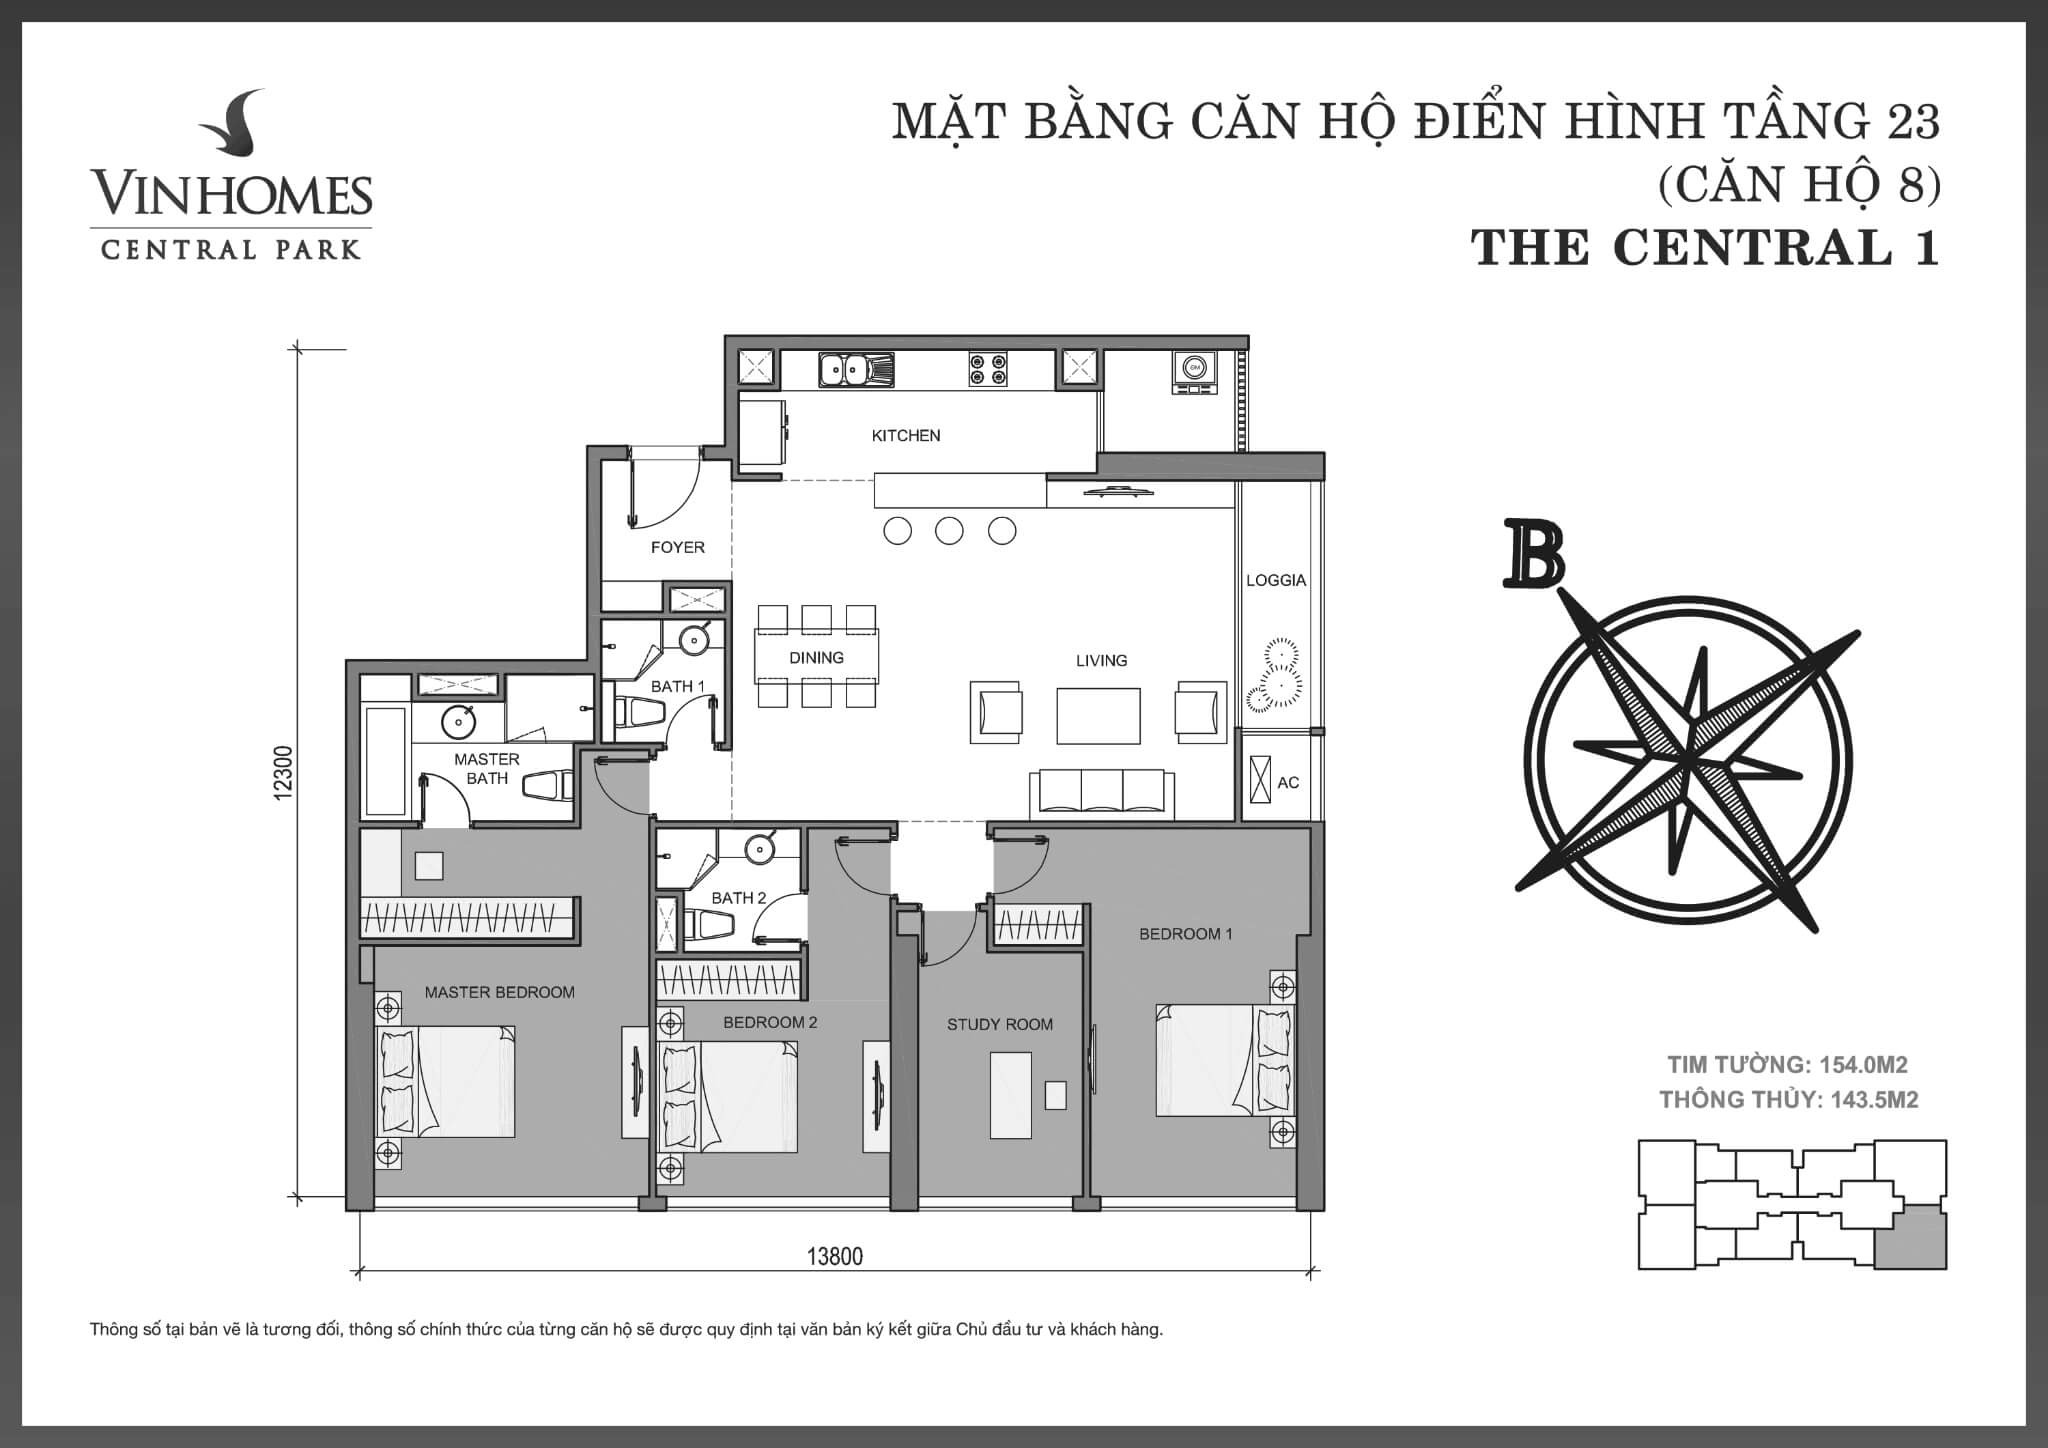 layout căn hộ số 8 tầng 23 Central 1